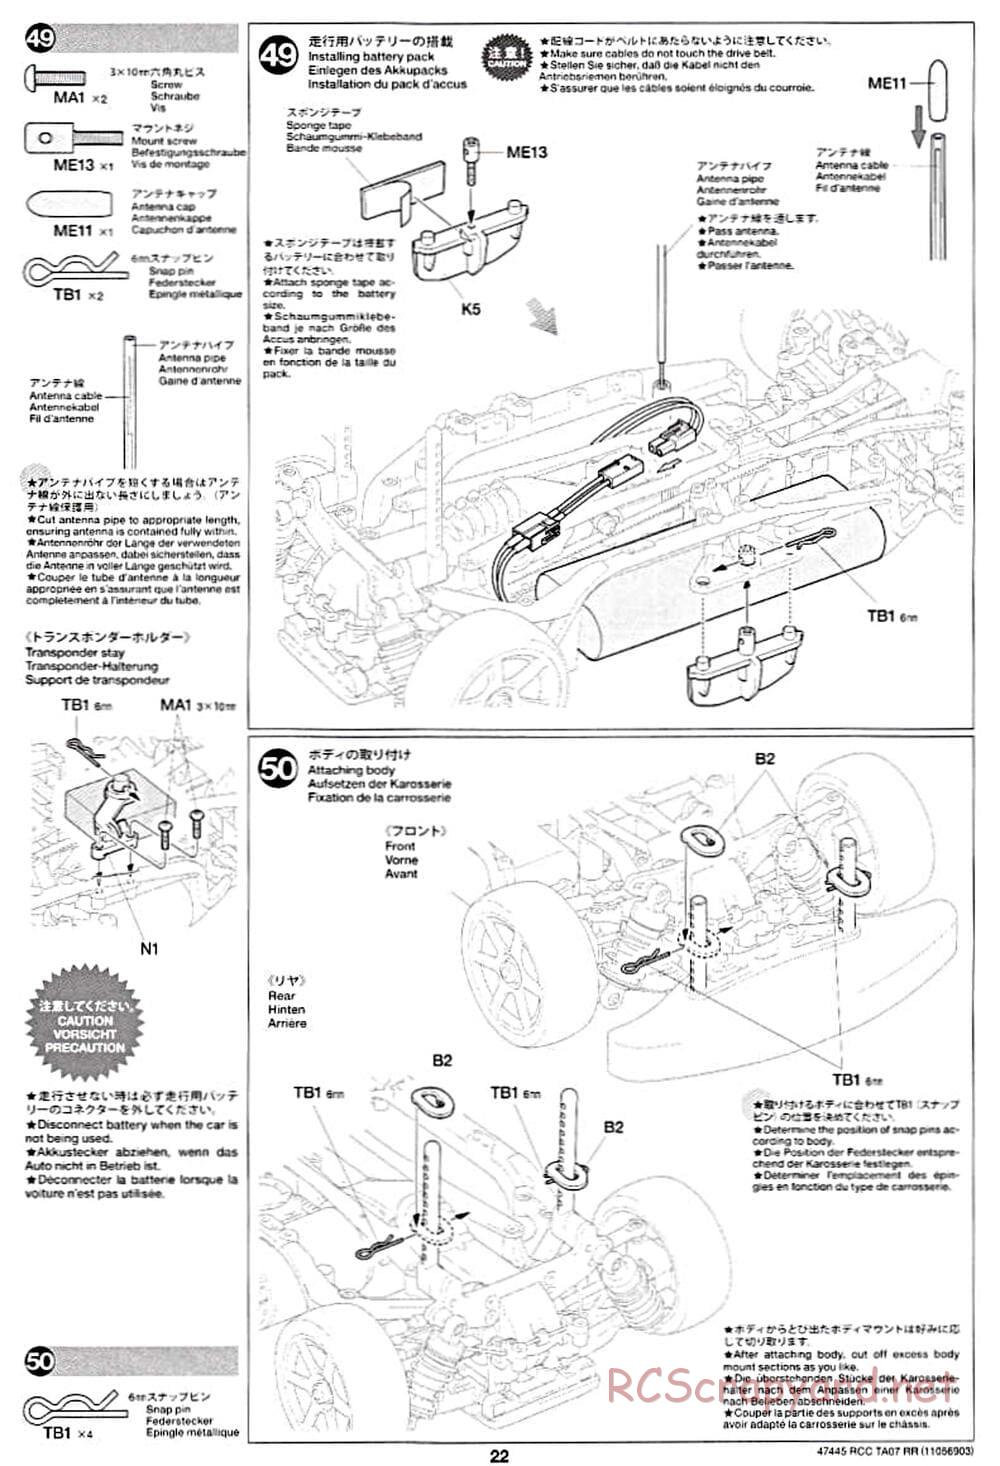 Tamiya - TA07 RR Chassis - Manual - Page 22